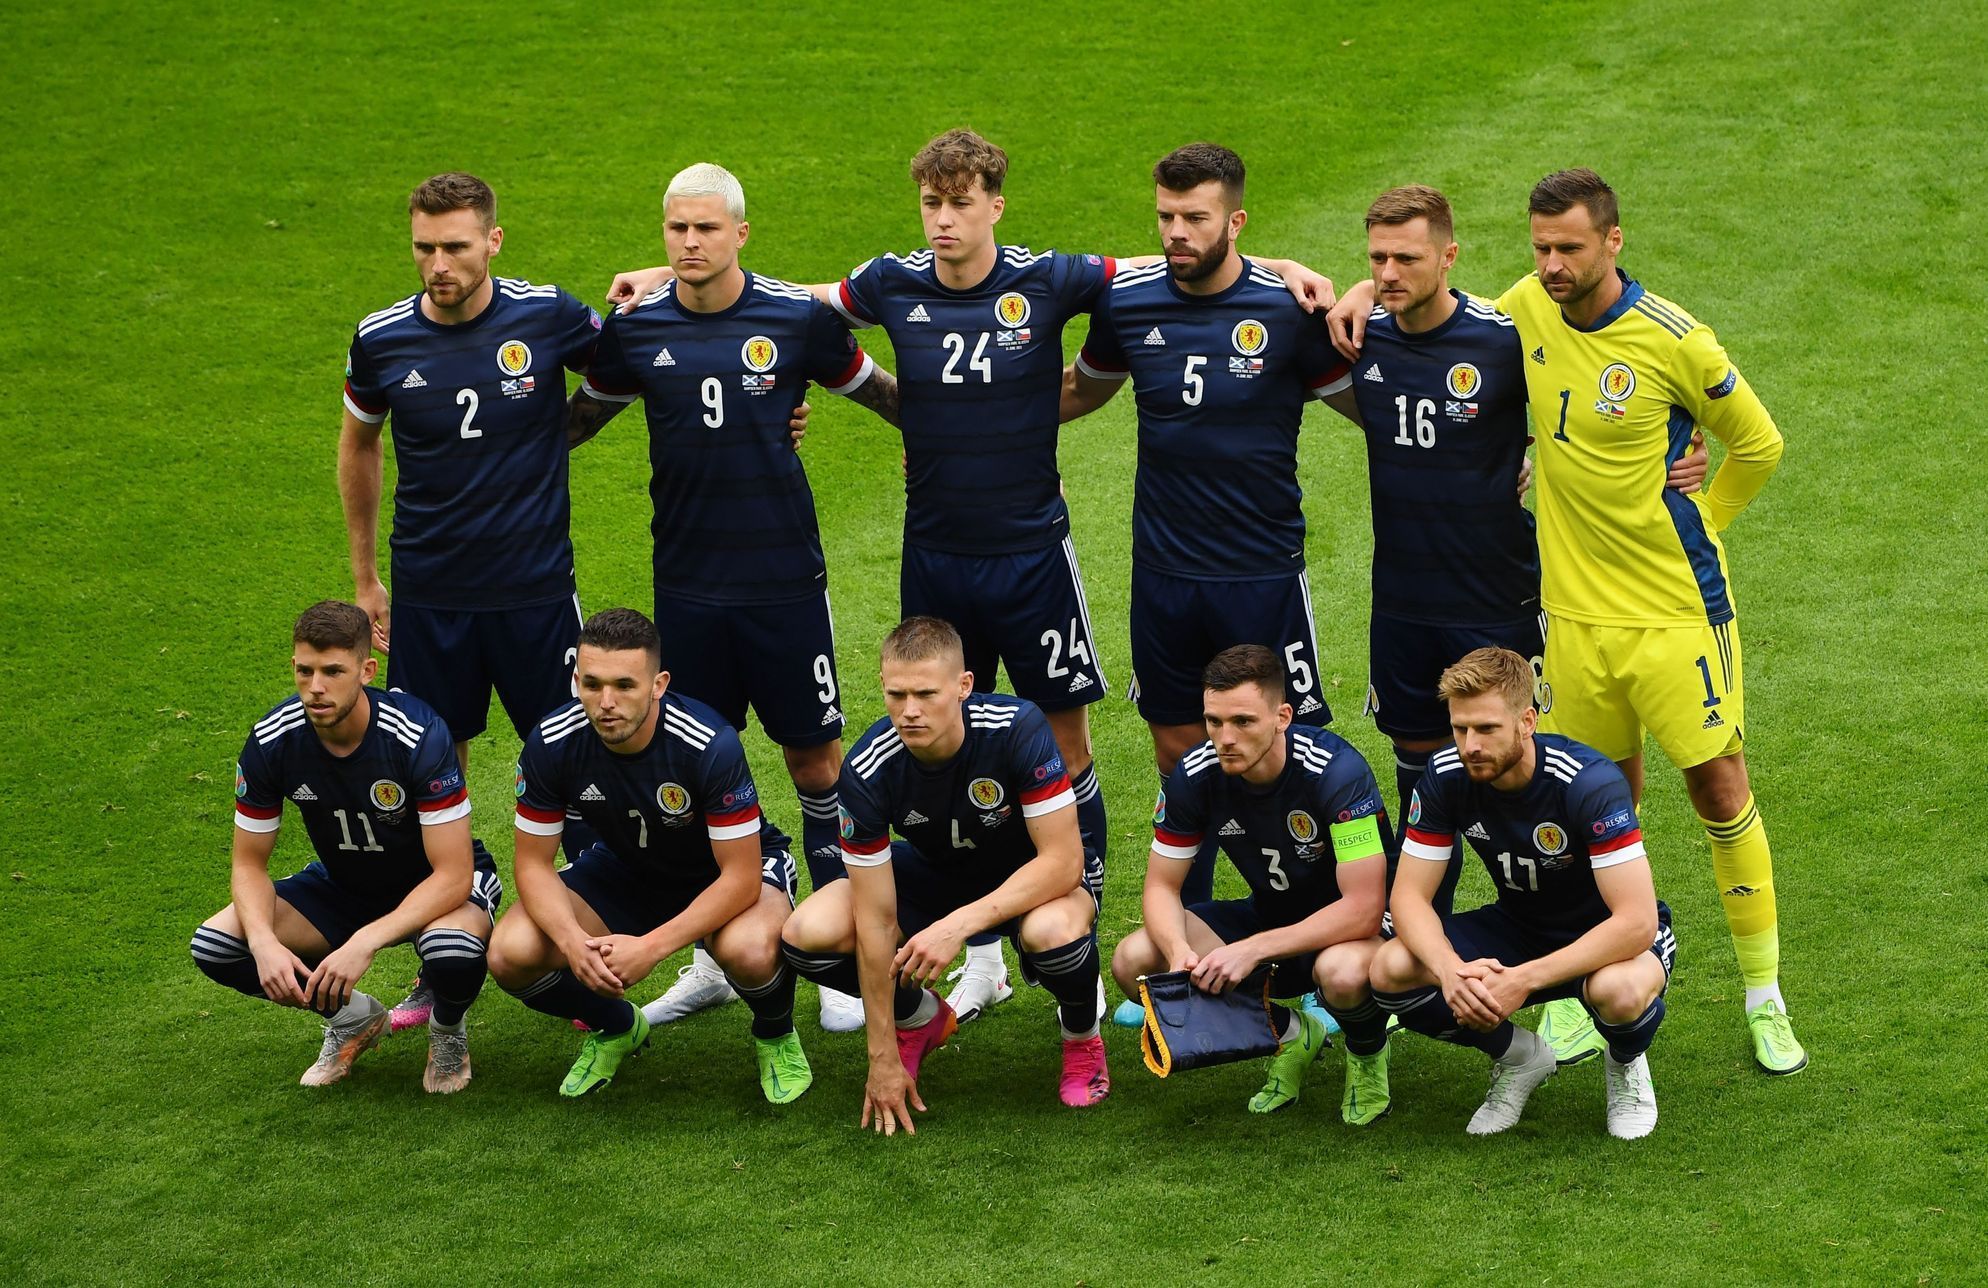 Skotský tým před zápasem Skotsko - Česko na ME 2020